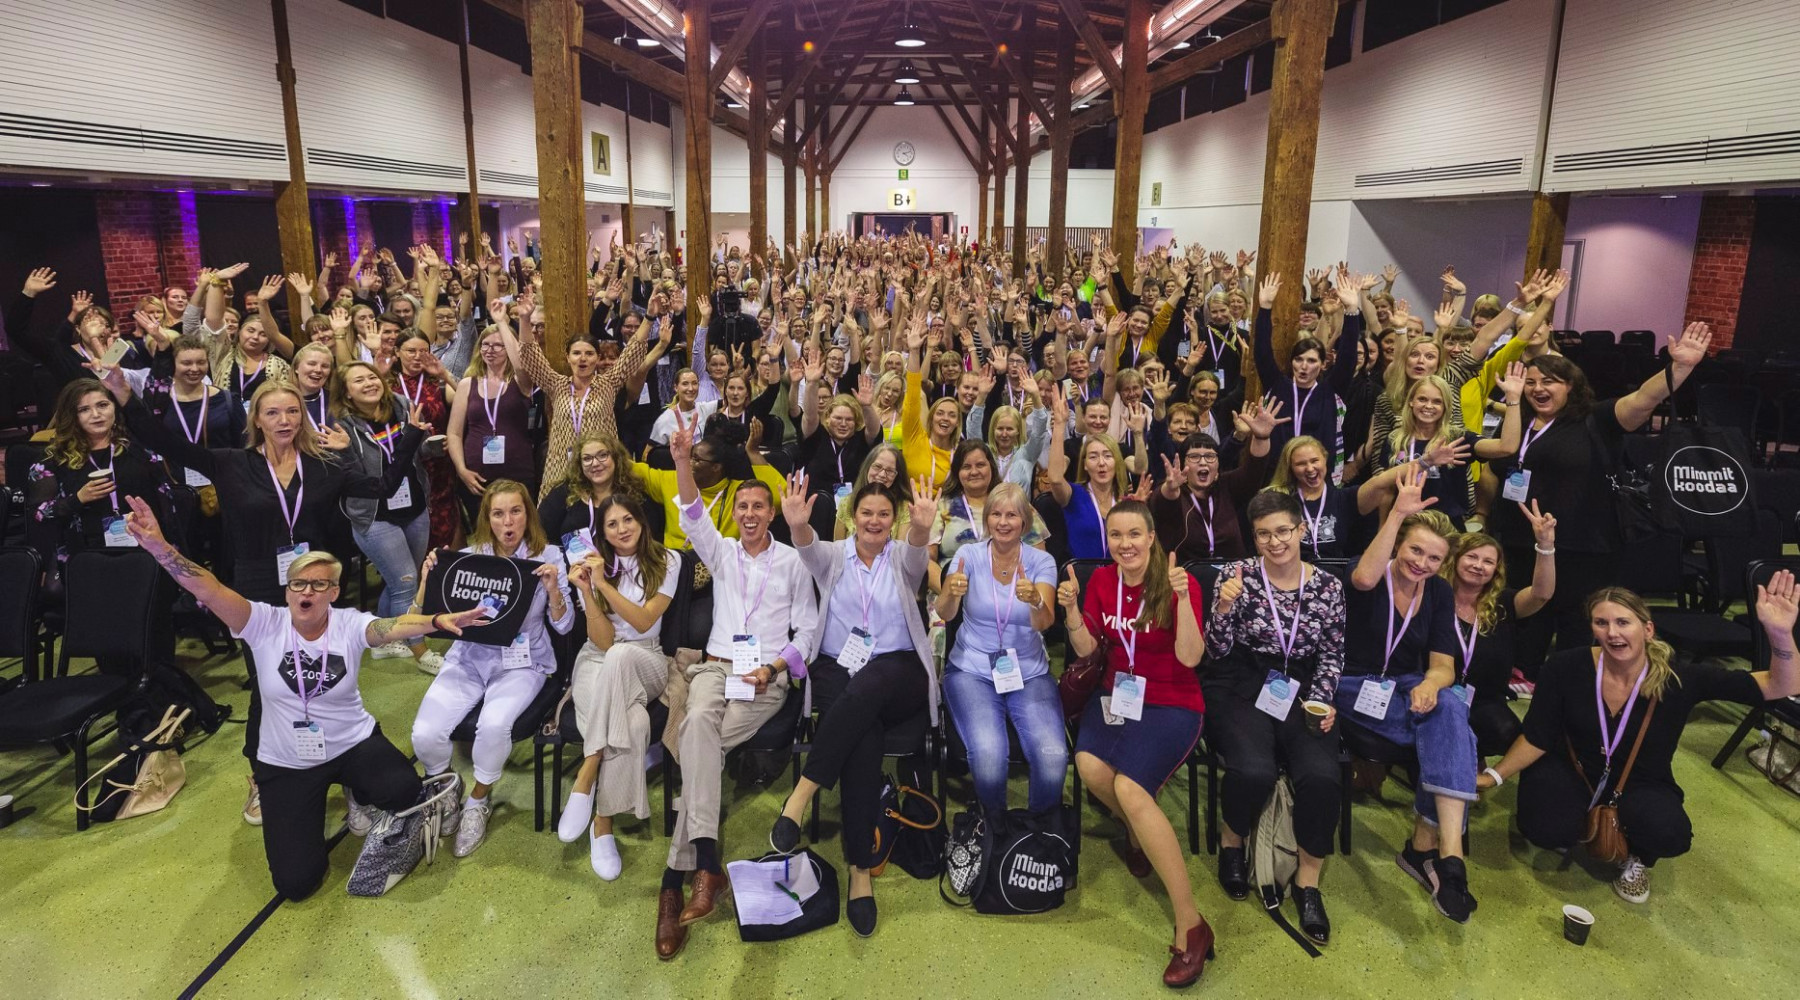 Algumas centenas de pessoas, quase todas mulheres, posam para uma foto de grupo em um salão em um evento de oficina.